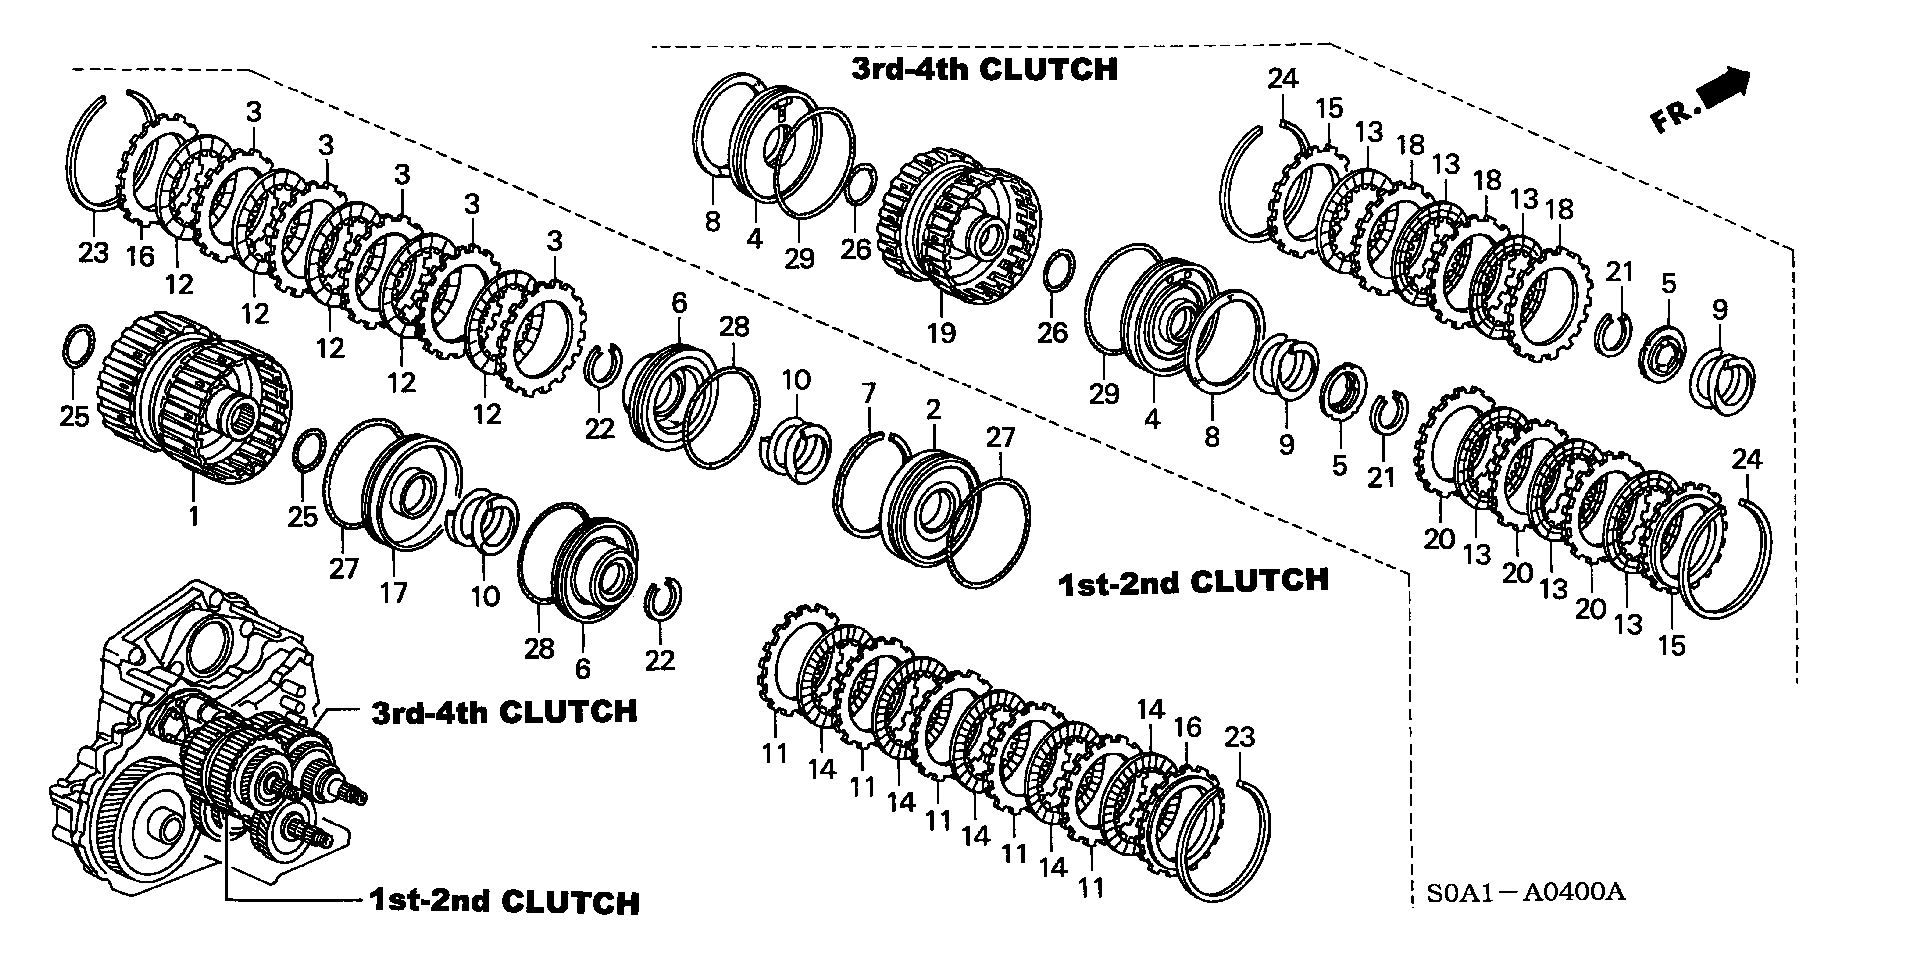 CLUTCH(2WD)